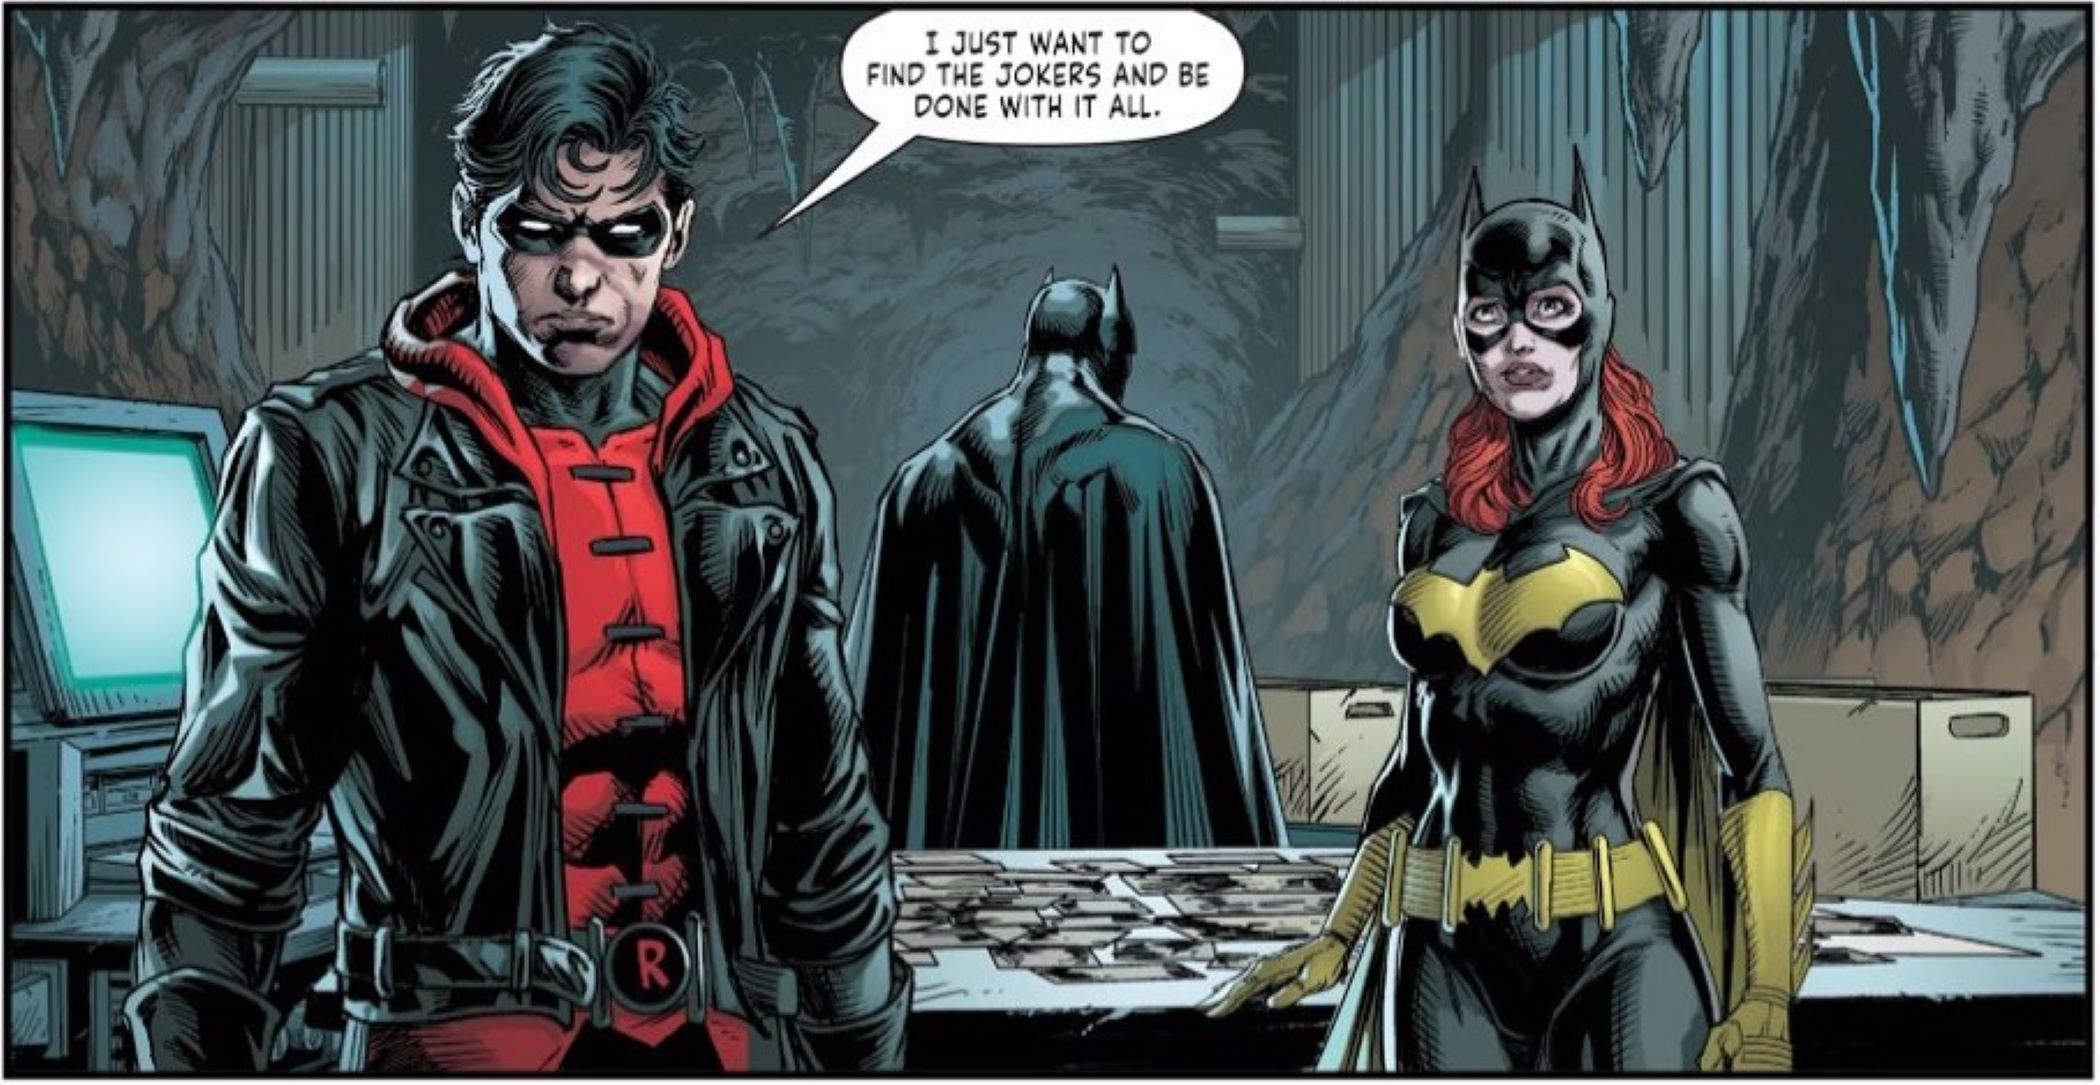 Batman et Batgirl semblent très déçus alors que Red Hood déclare qu'il va tuer les deux derniers Jokers restants.